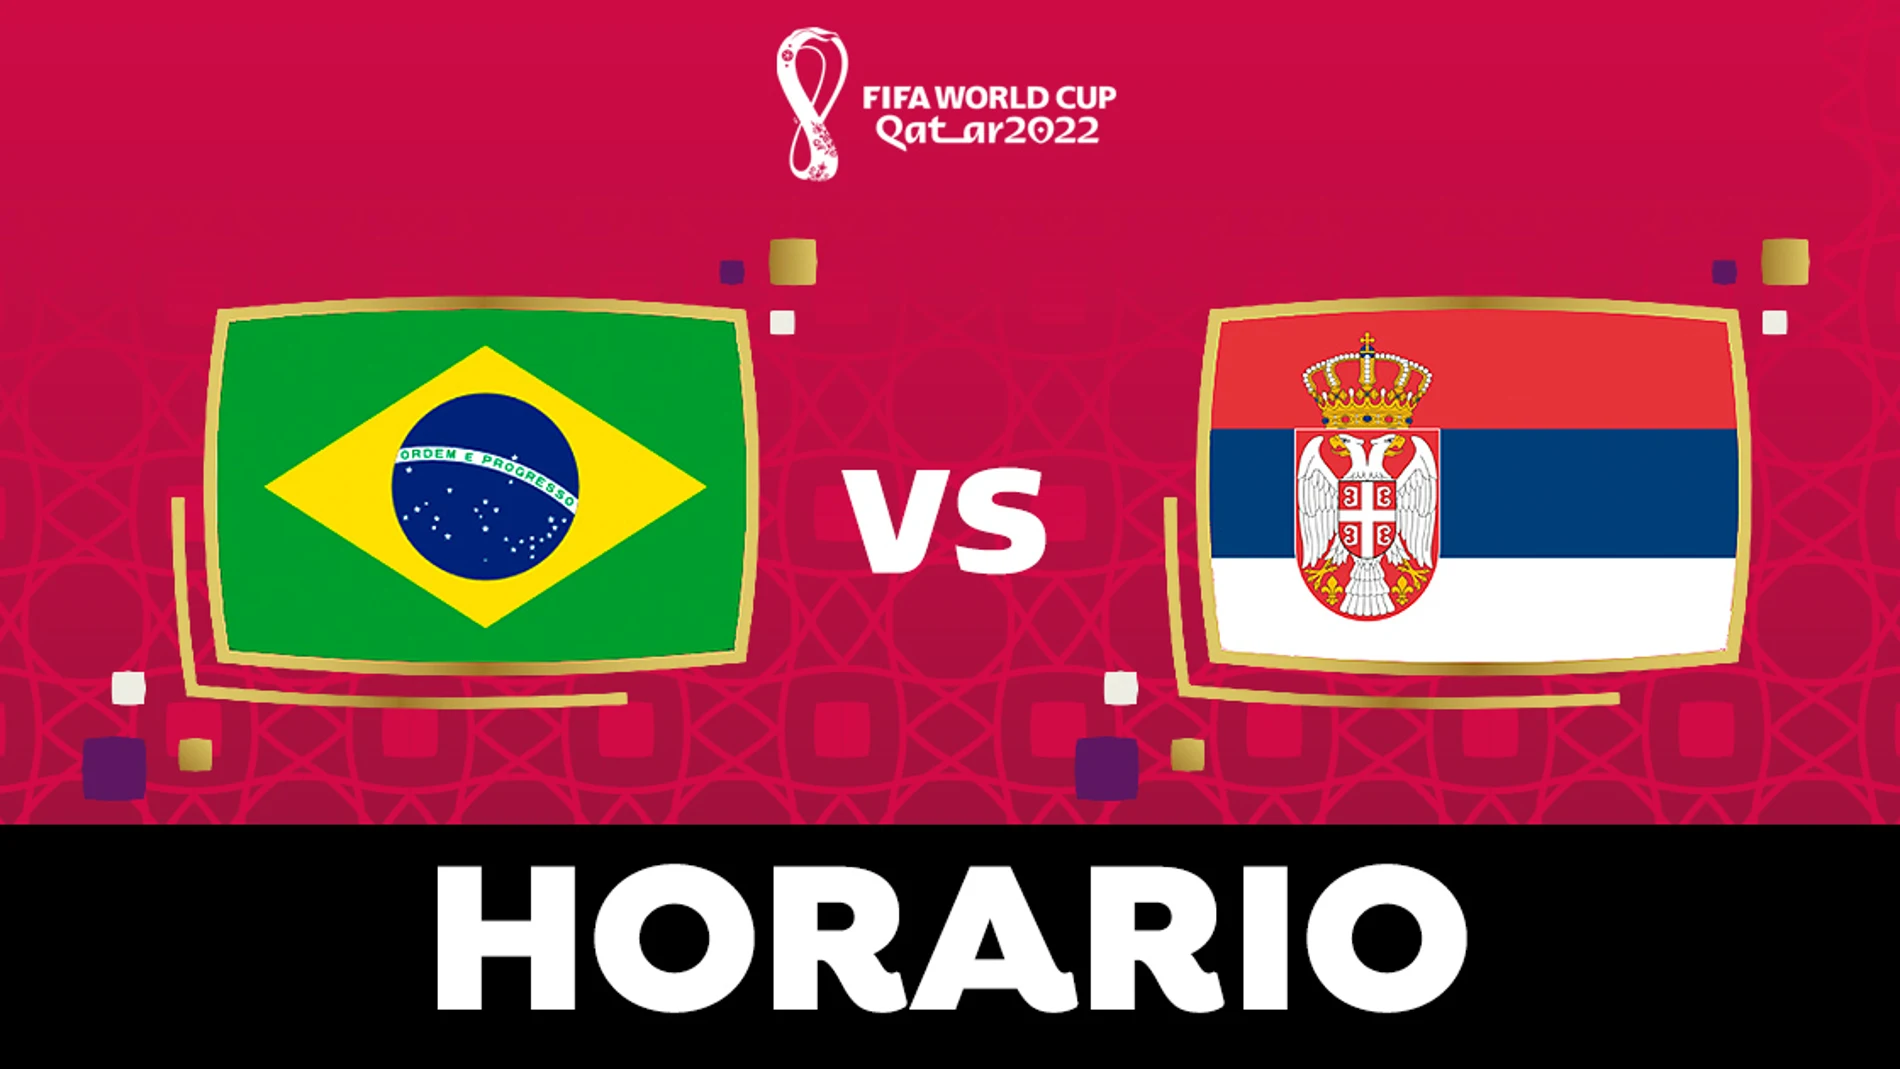 Brasil - Horario y dónde ver el partido del Mundial de Qatar en directo